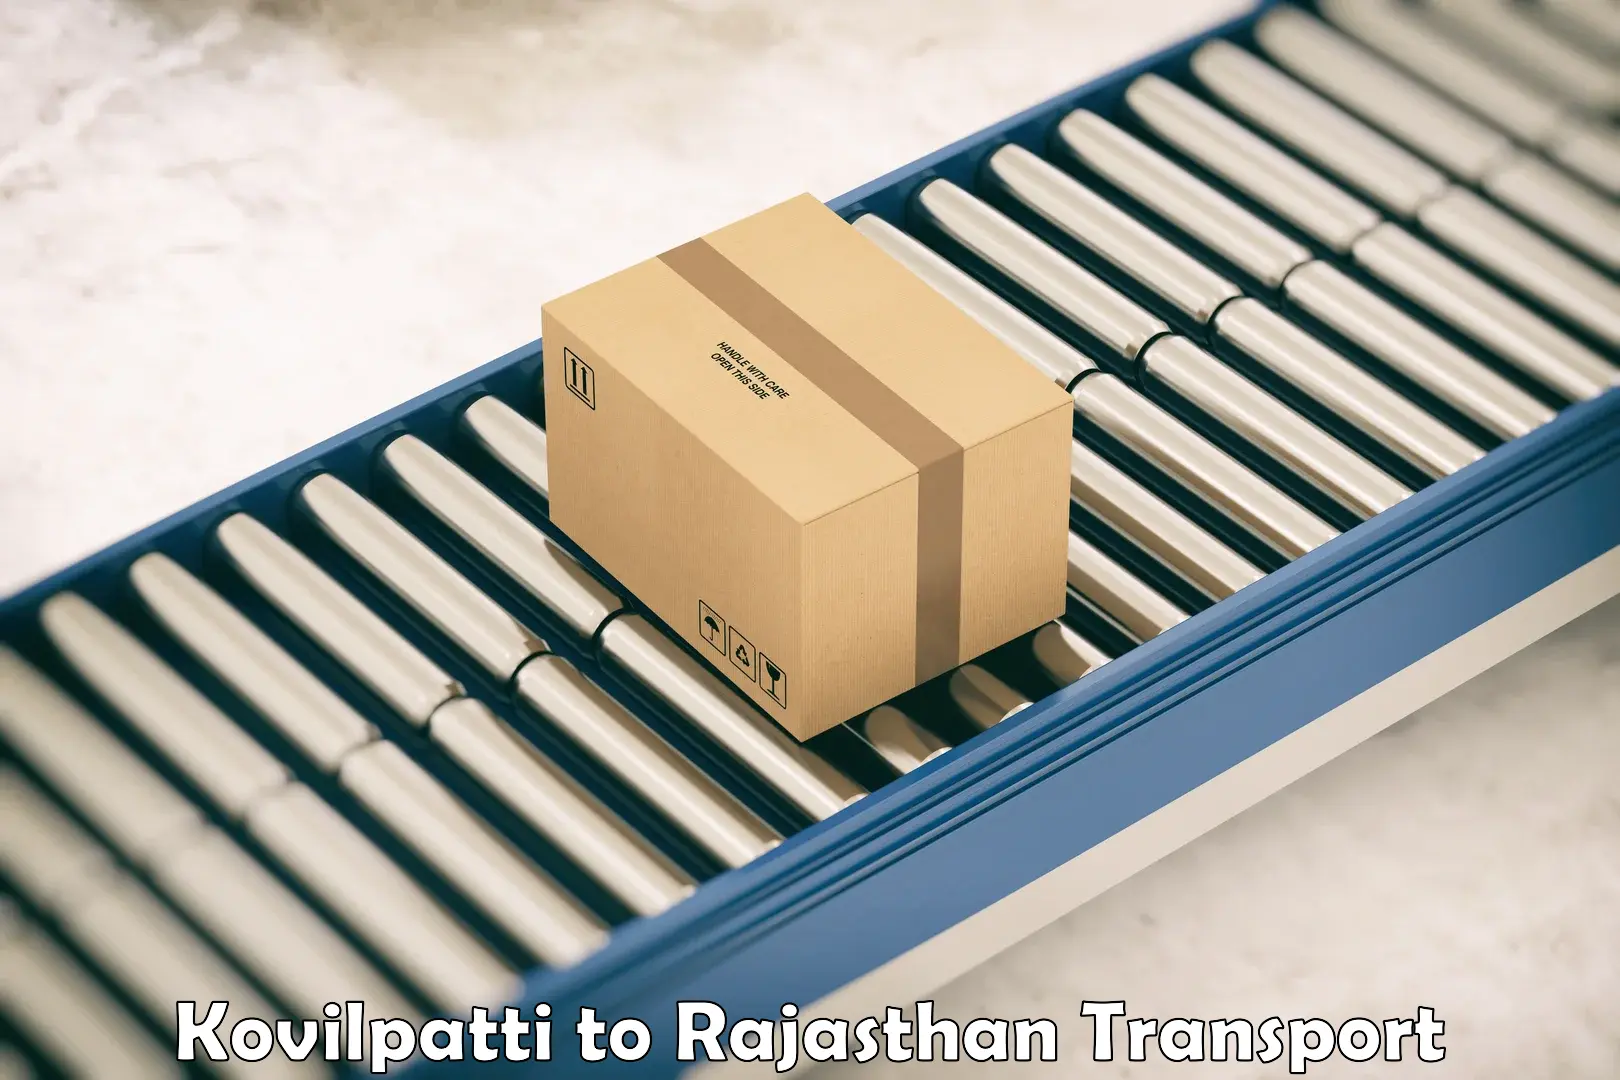 Daily parcel service transport Kovilpatti to Jaipur